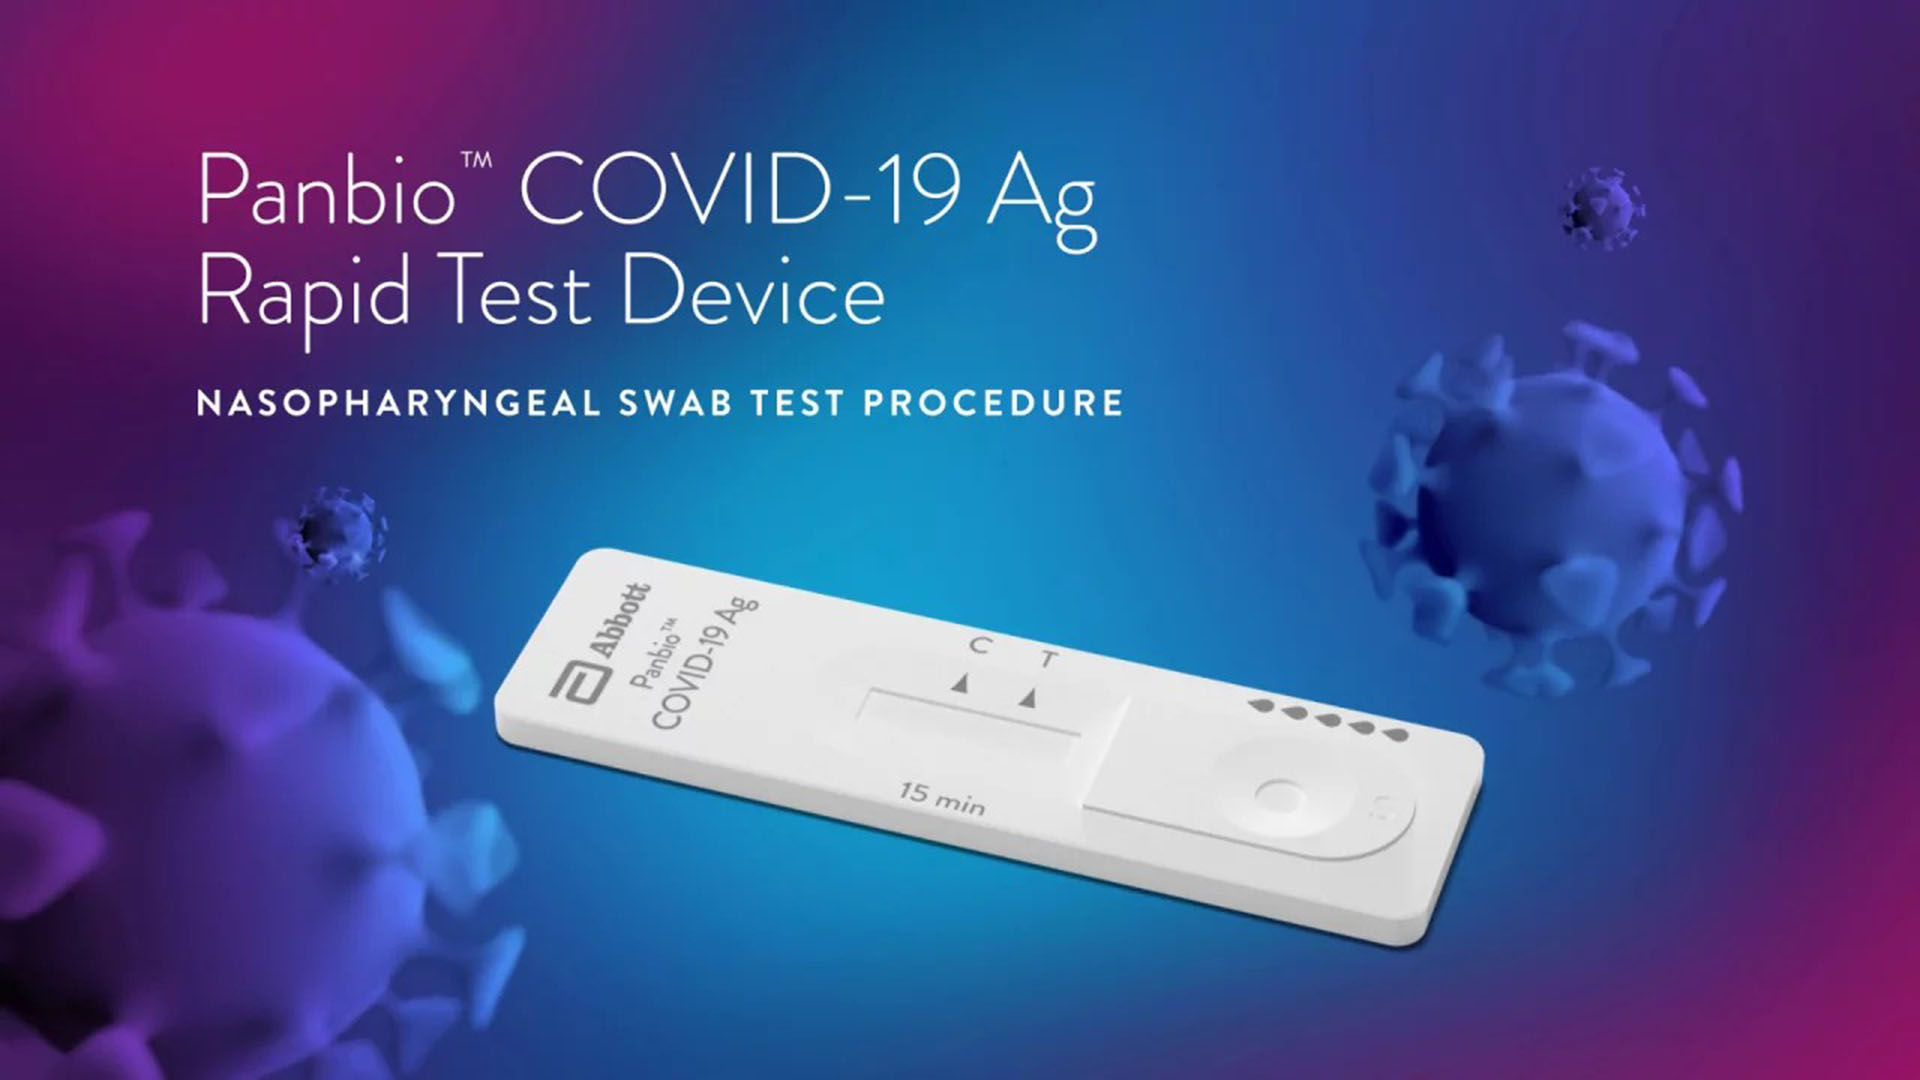 La ANMAT de Argentina autorizó la venta en farmacias de cuatro test de autoevaluación para COVID-19 de los laboratorios Abbott, Roche, Vyam Group y Wiener